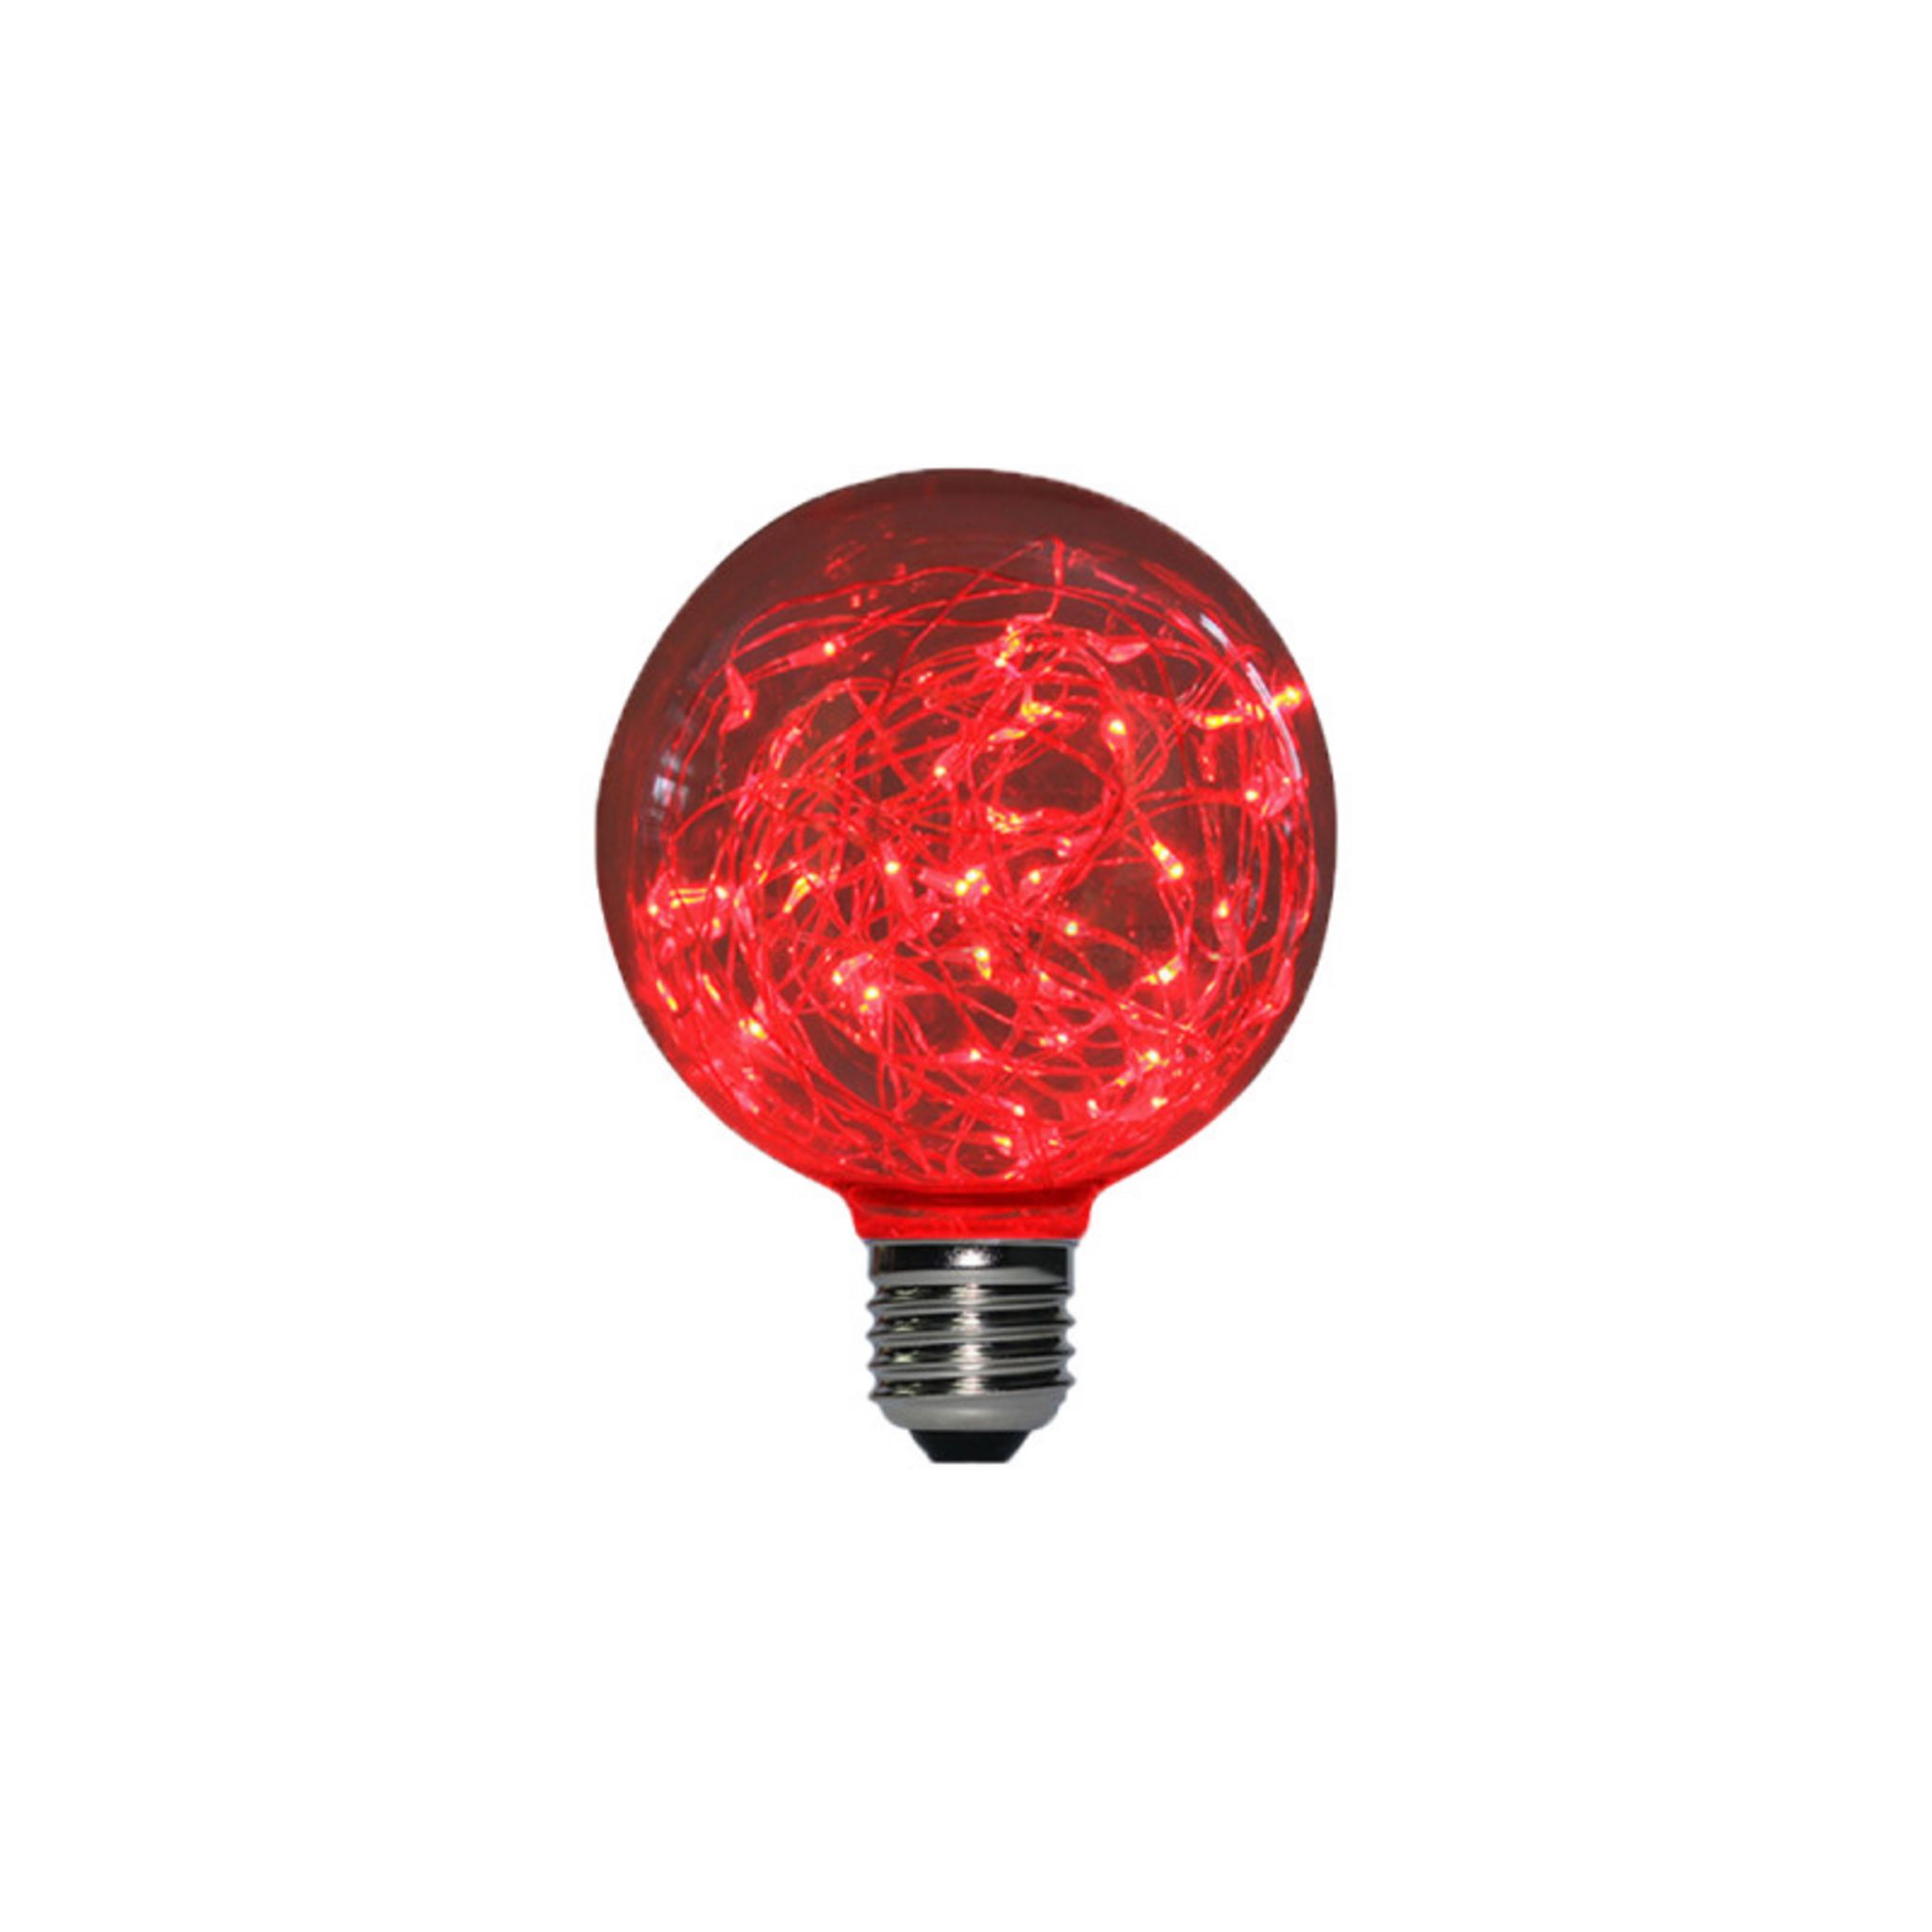 Ampoule LED globe rouge à fil de cuivre XXCELL - 2 W - E27 pas cher 